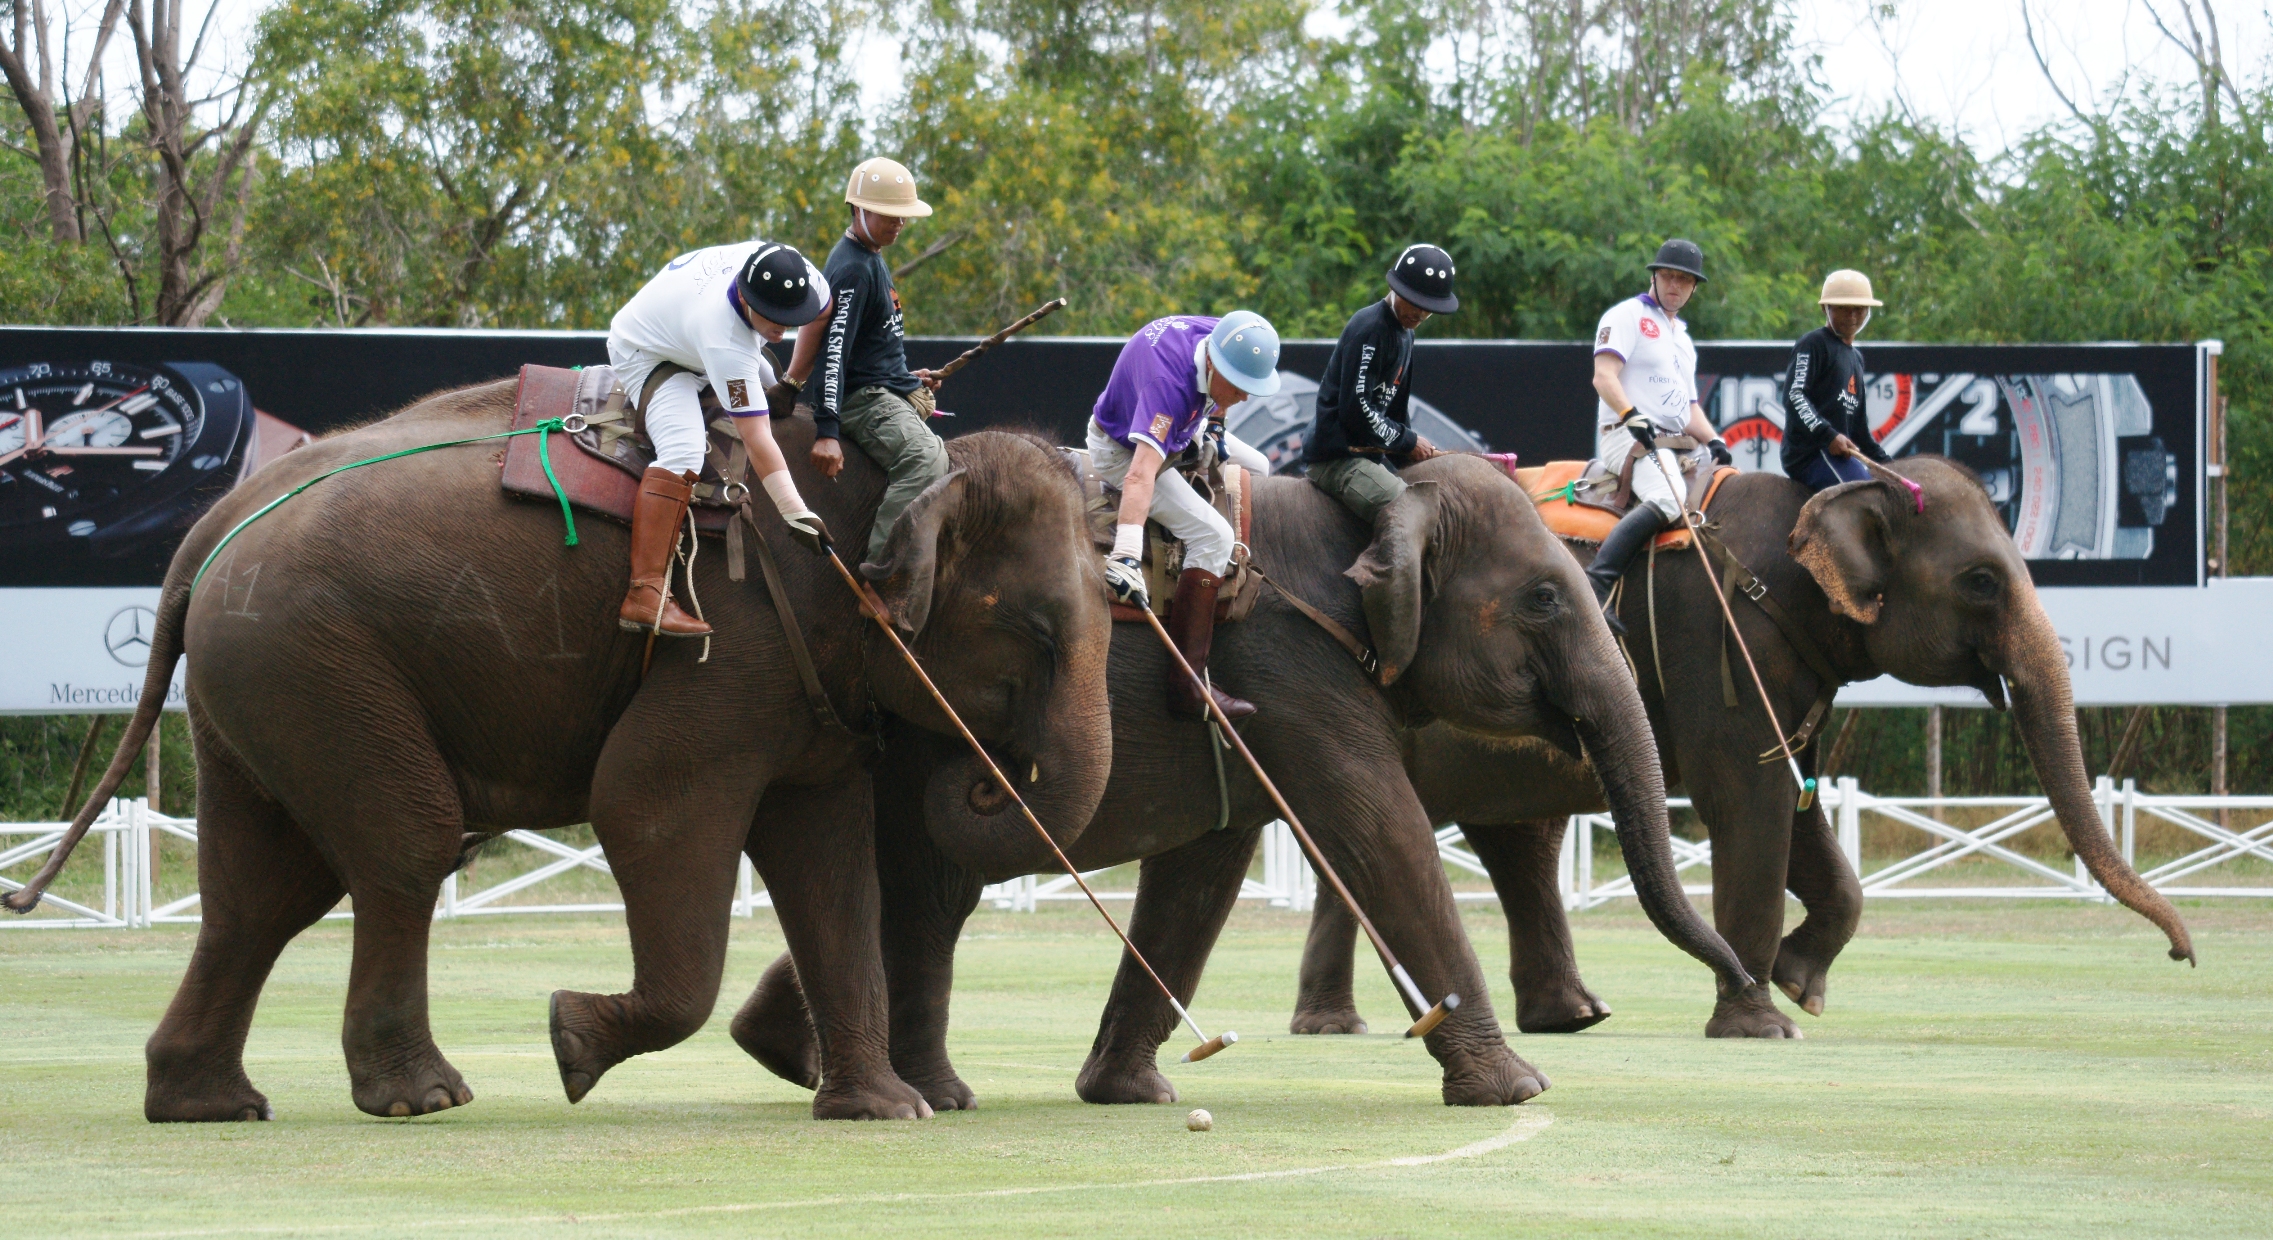 elephant polo sport